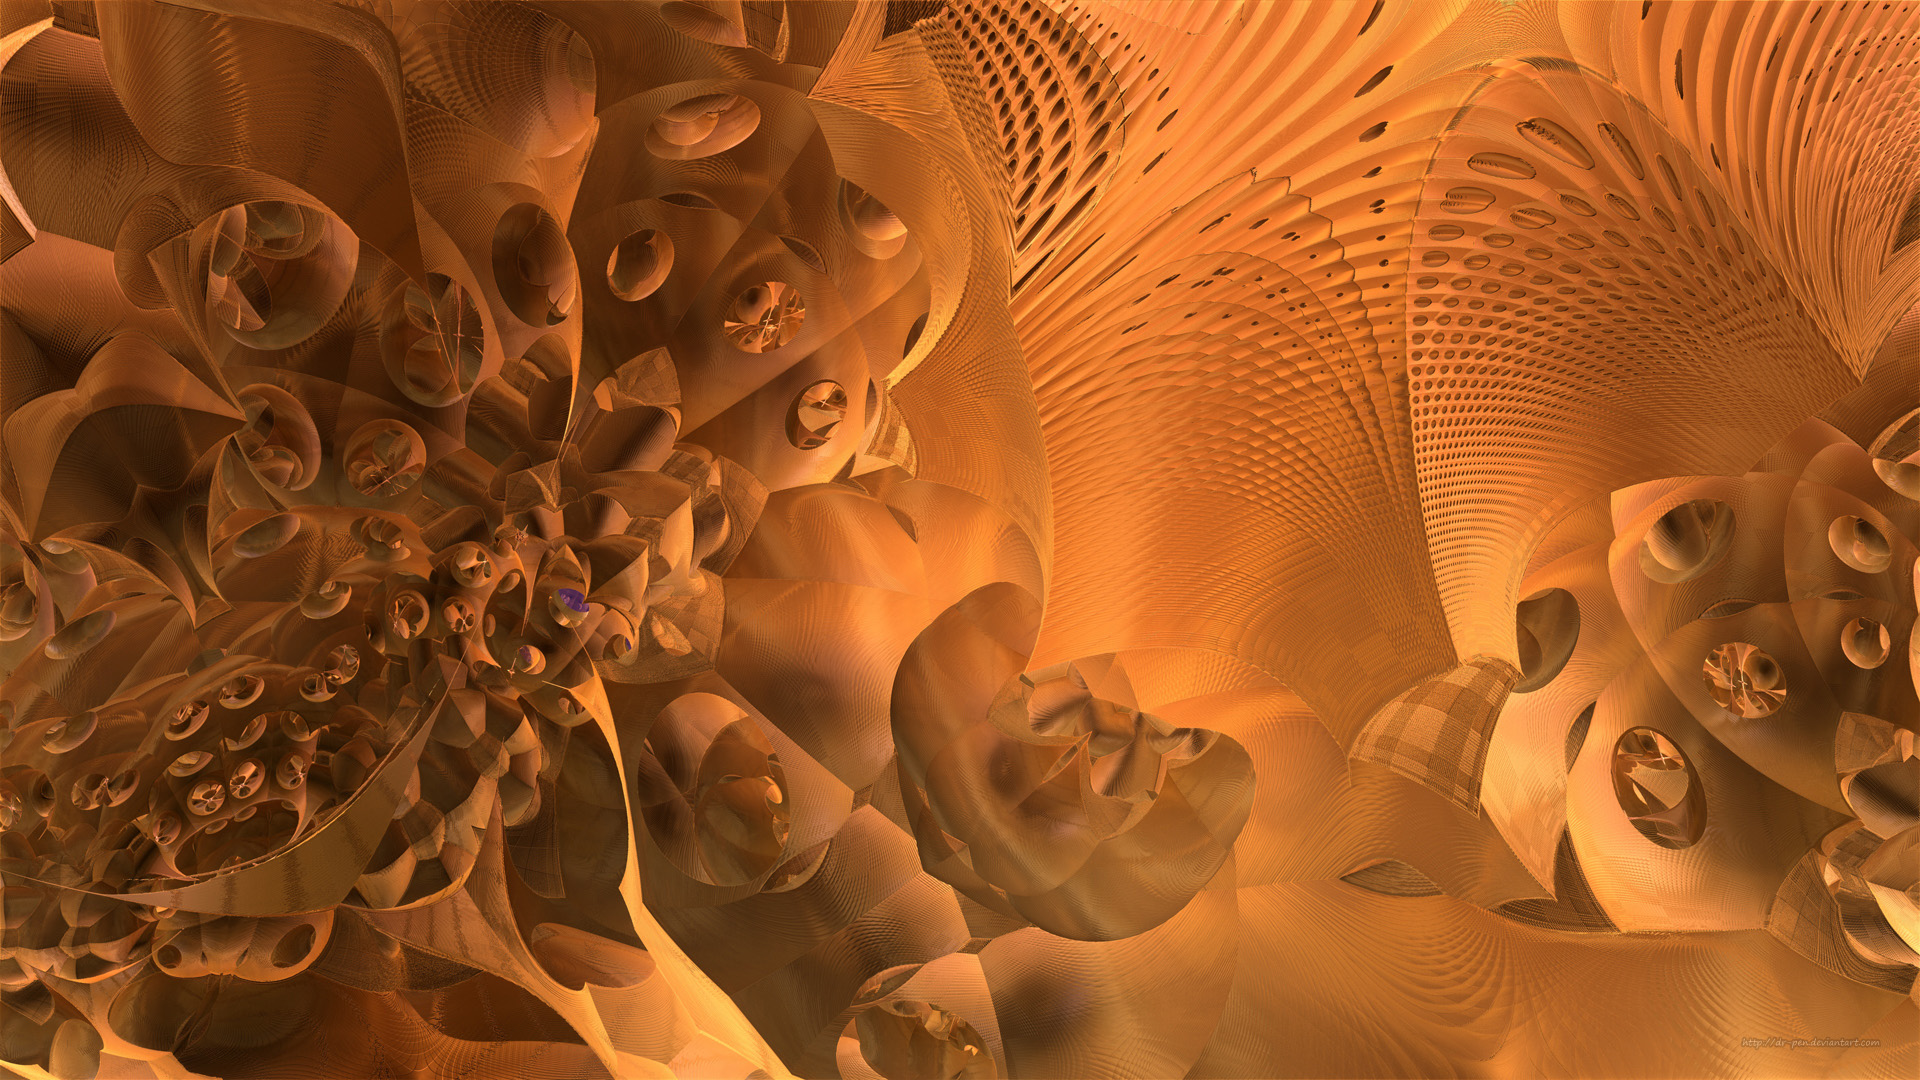 Free download wallpaper Abstract, Fractal, Cgi, Orange (Color), Mandelbulb 3D on your PC desktop